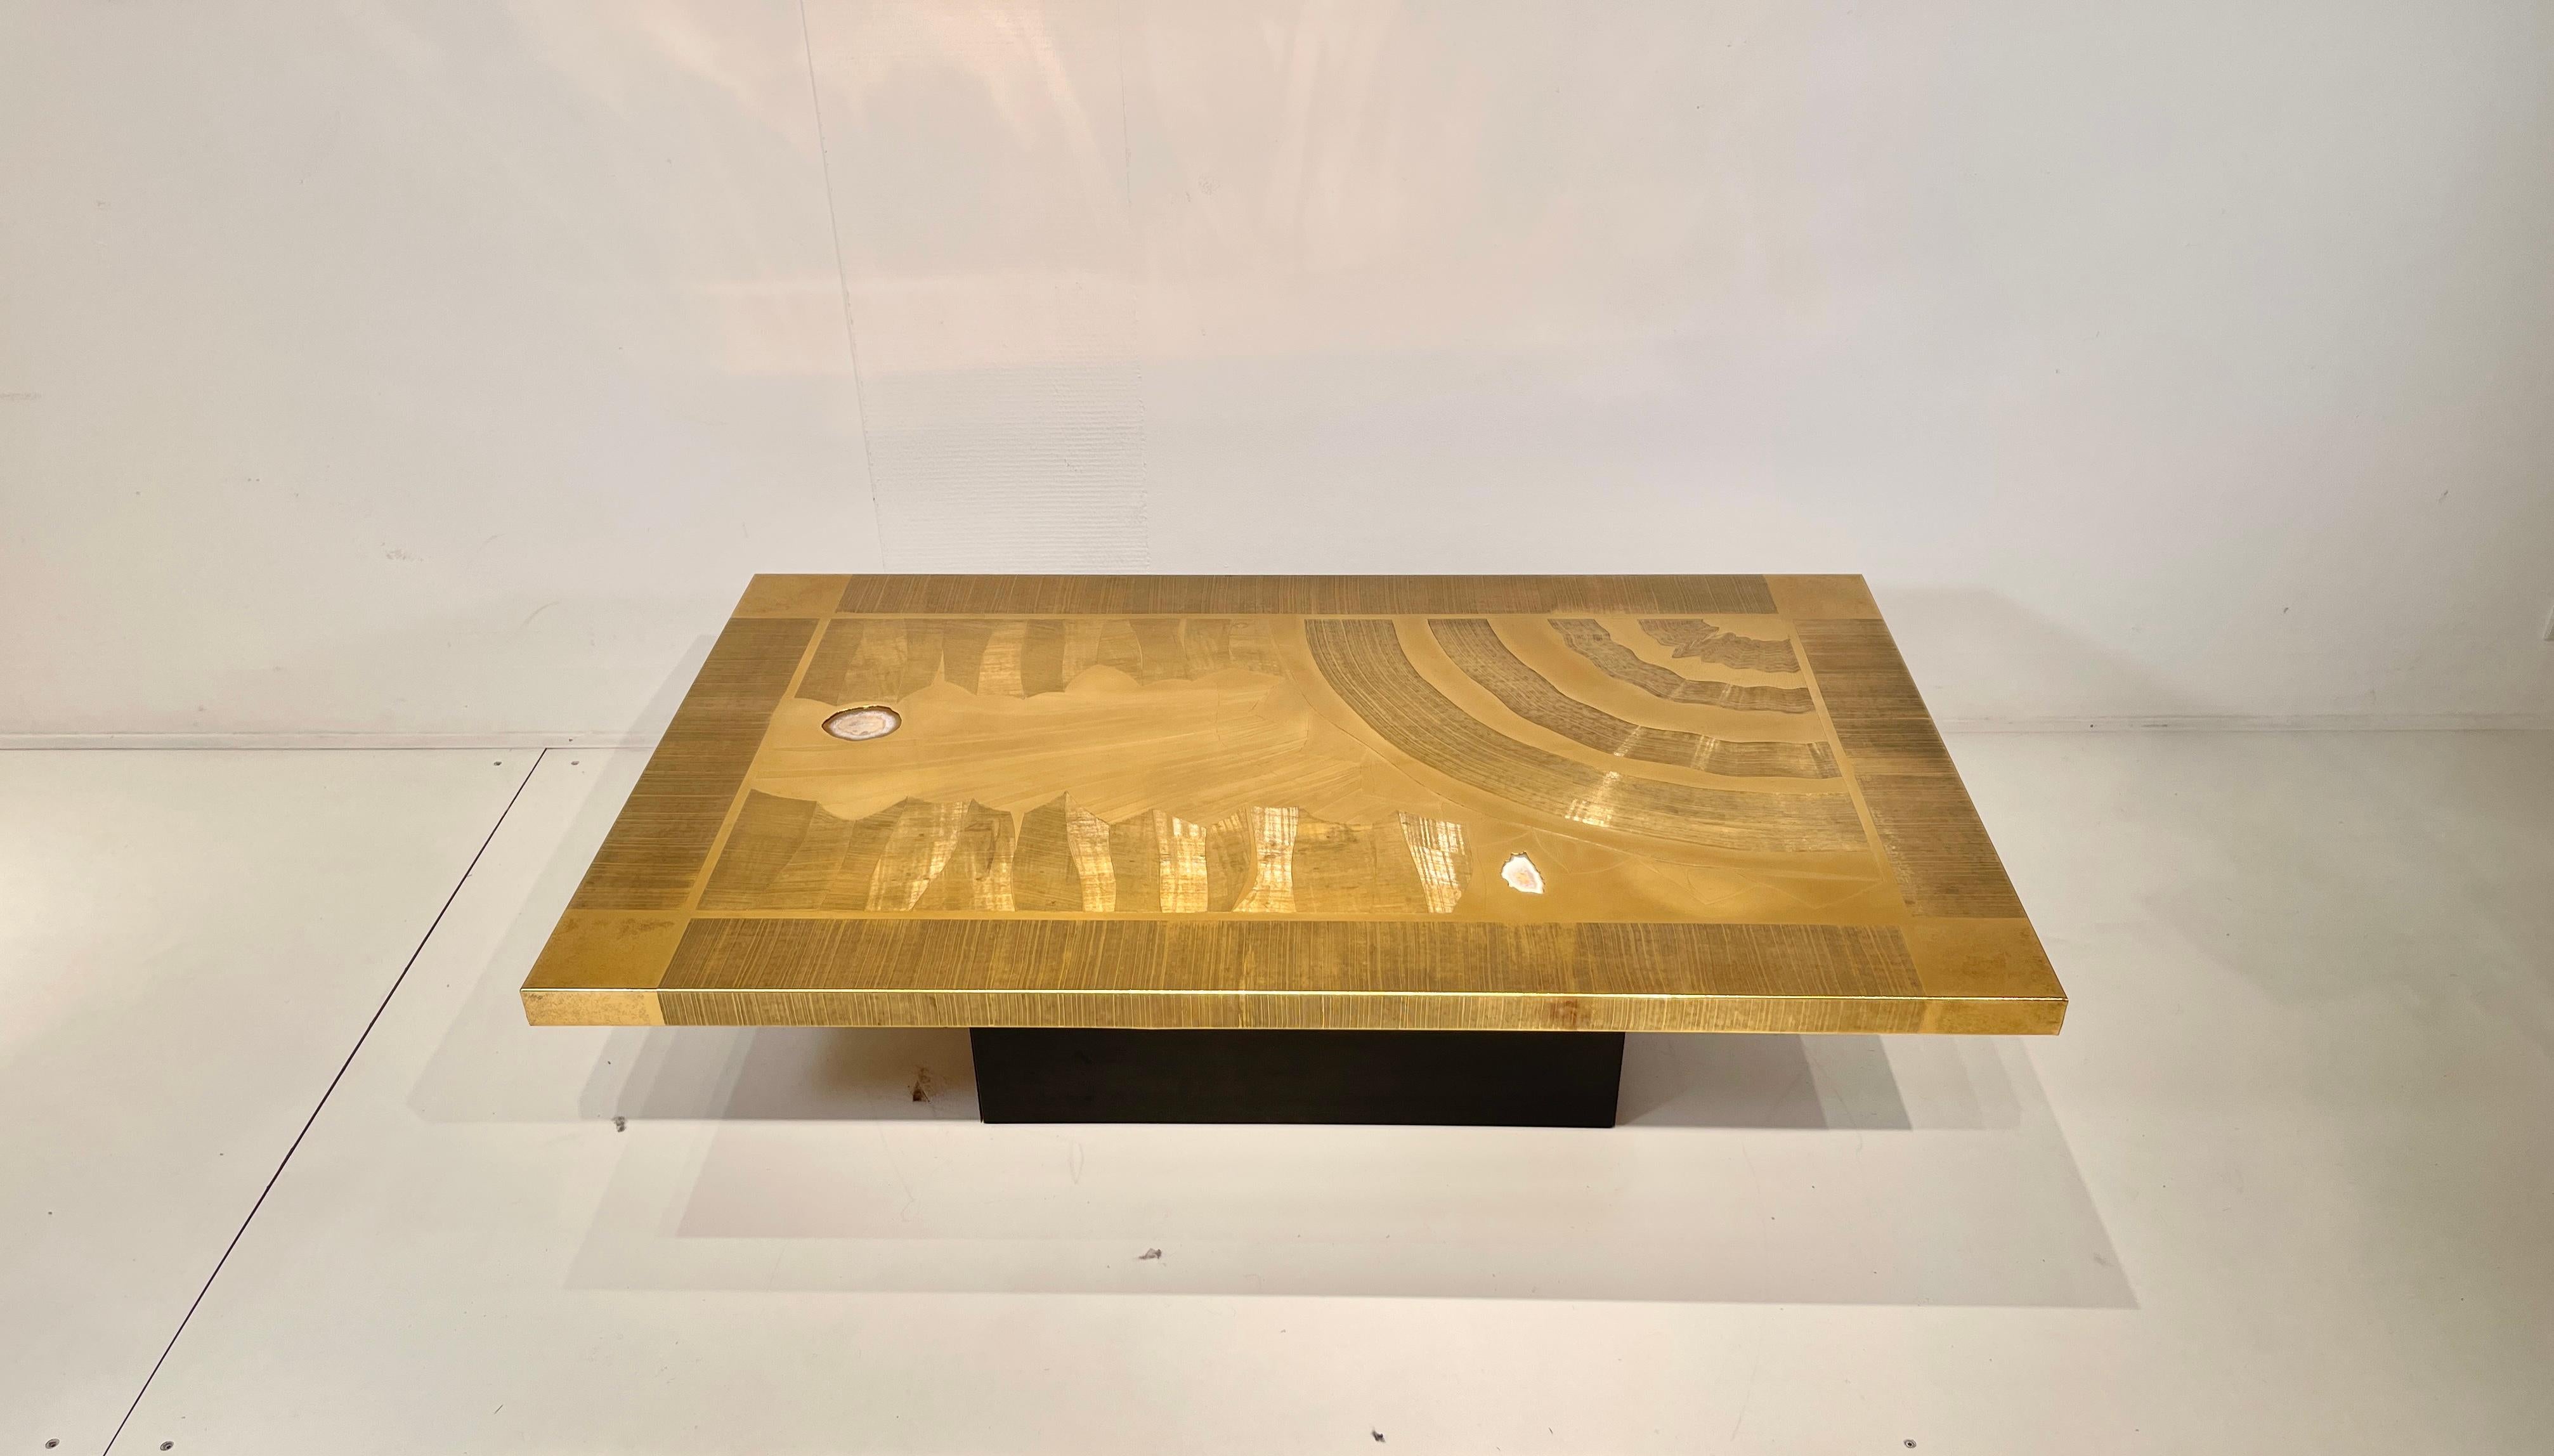 Table basse en laiton gravé conçue par Christian Krekels dans les années 1977, avec plateau en pierre de 2 agates. Ce meuble a été rafraîchi, le vernis et le polissage ont été refaits.
Signé, daté et numéroté par l'Artistics.